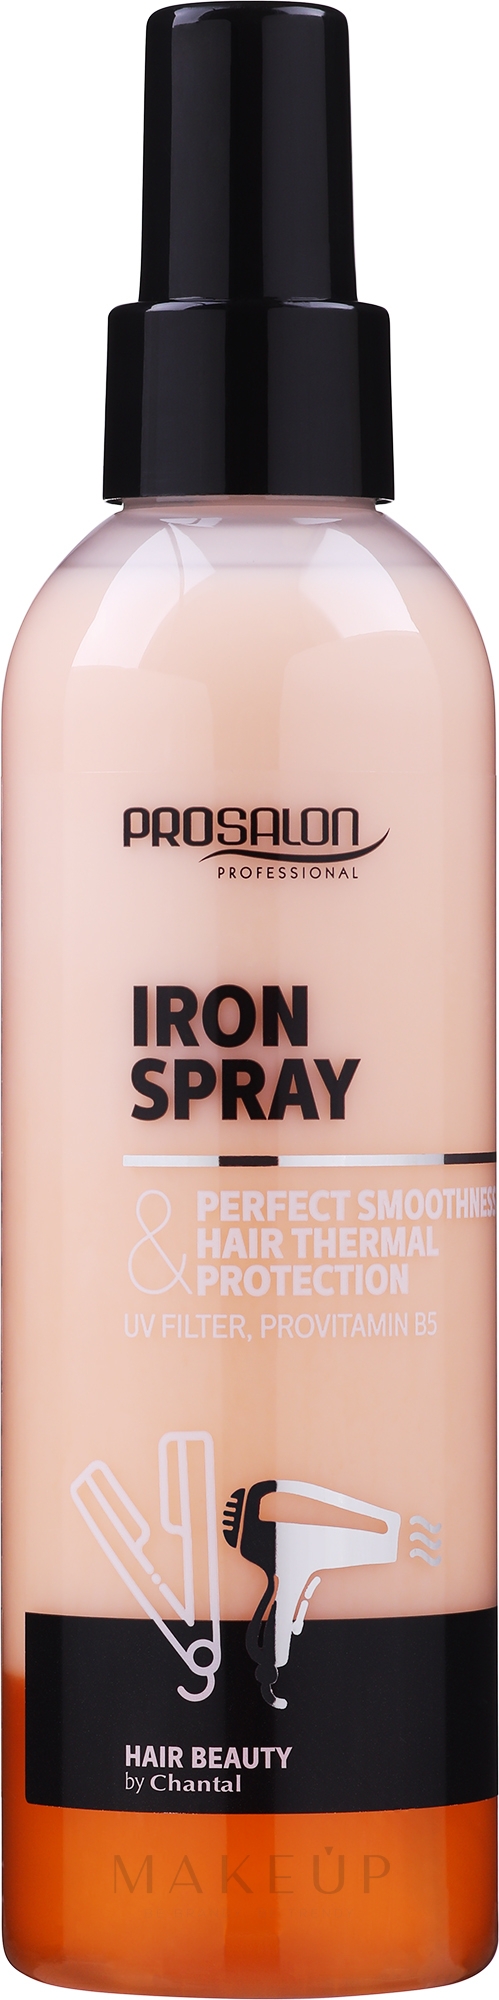 Glättendes Haarspray mit Hitzeschutz - Prosalon Styling Iron Spray-2 Phase — Foto 200 g